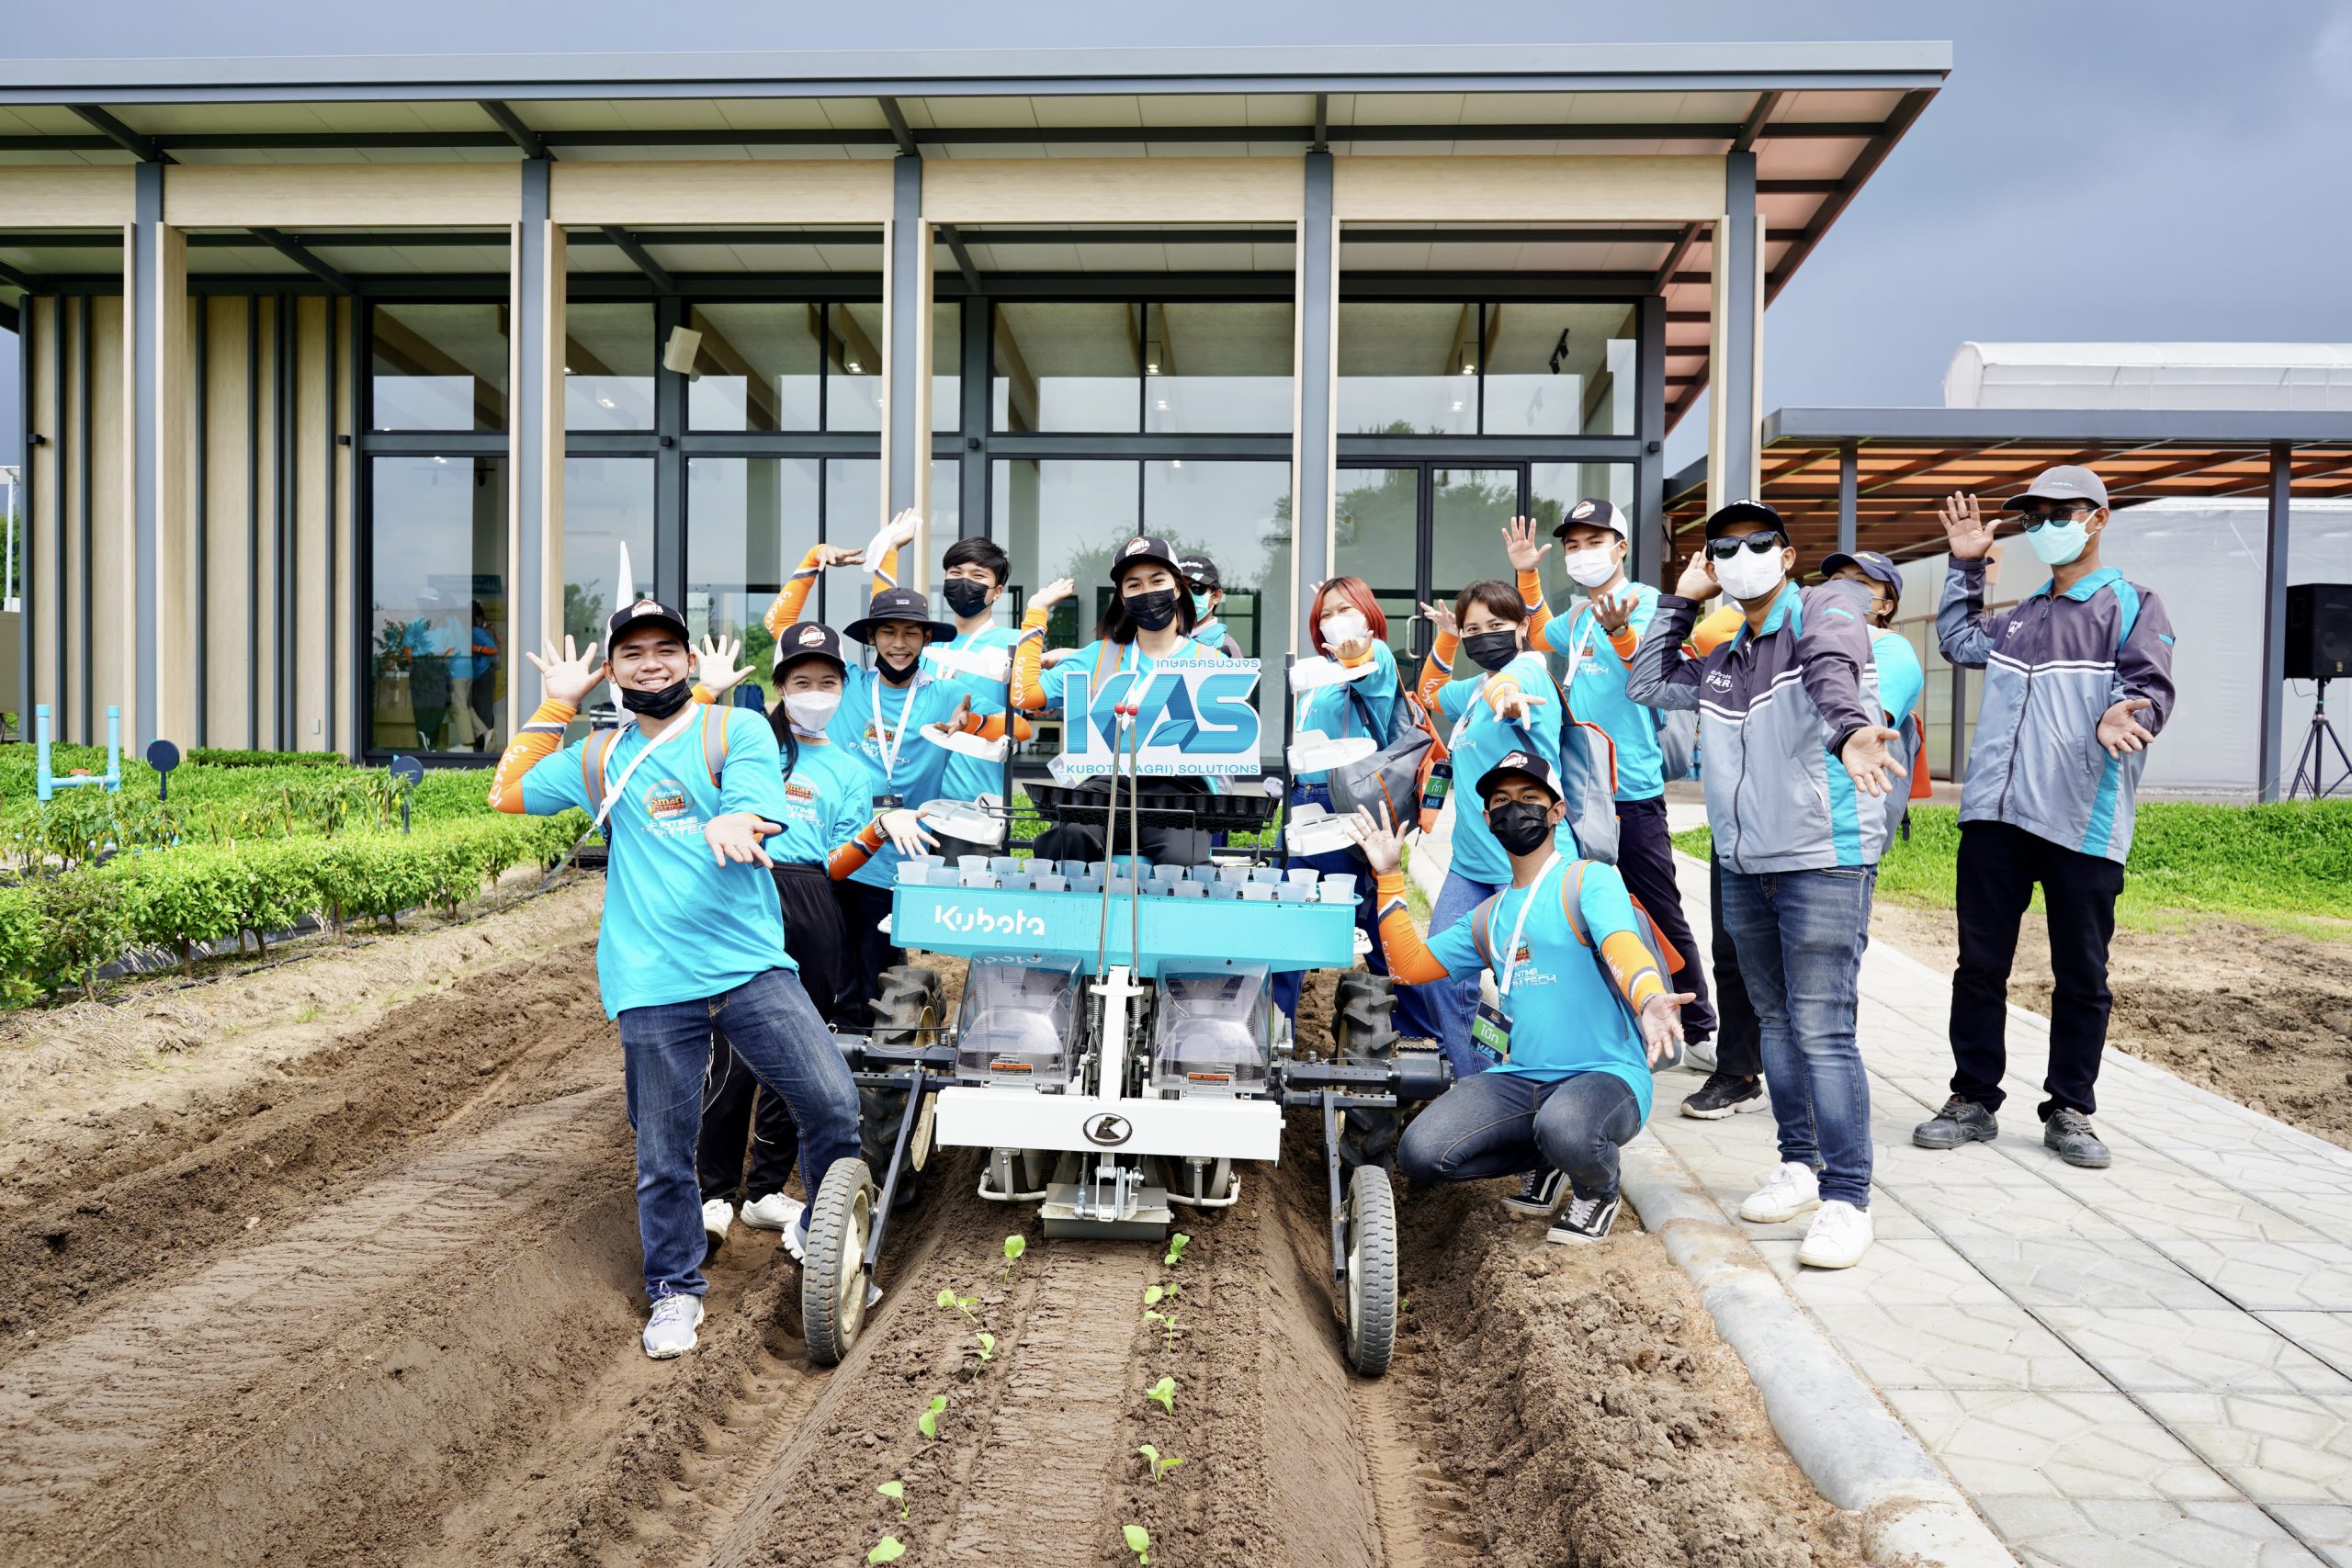 สยามคูโบต้า จัดกิจกรรม “KUBOTA Smart Farmer Camp 2022”